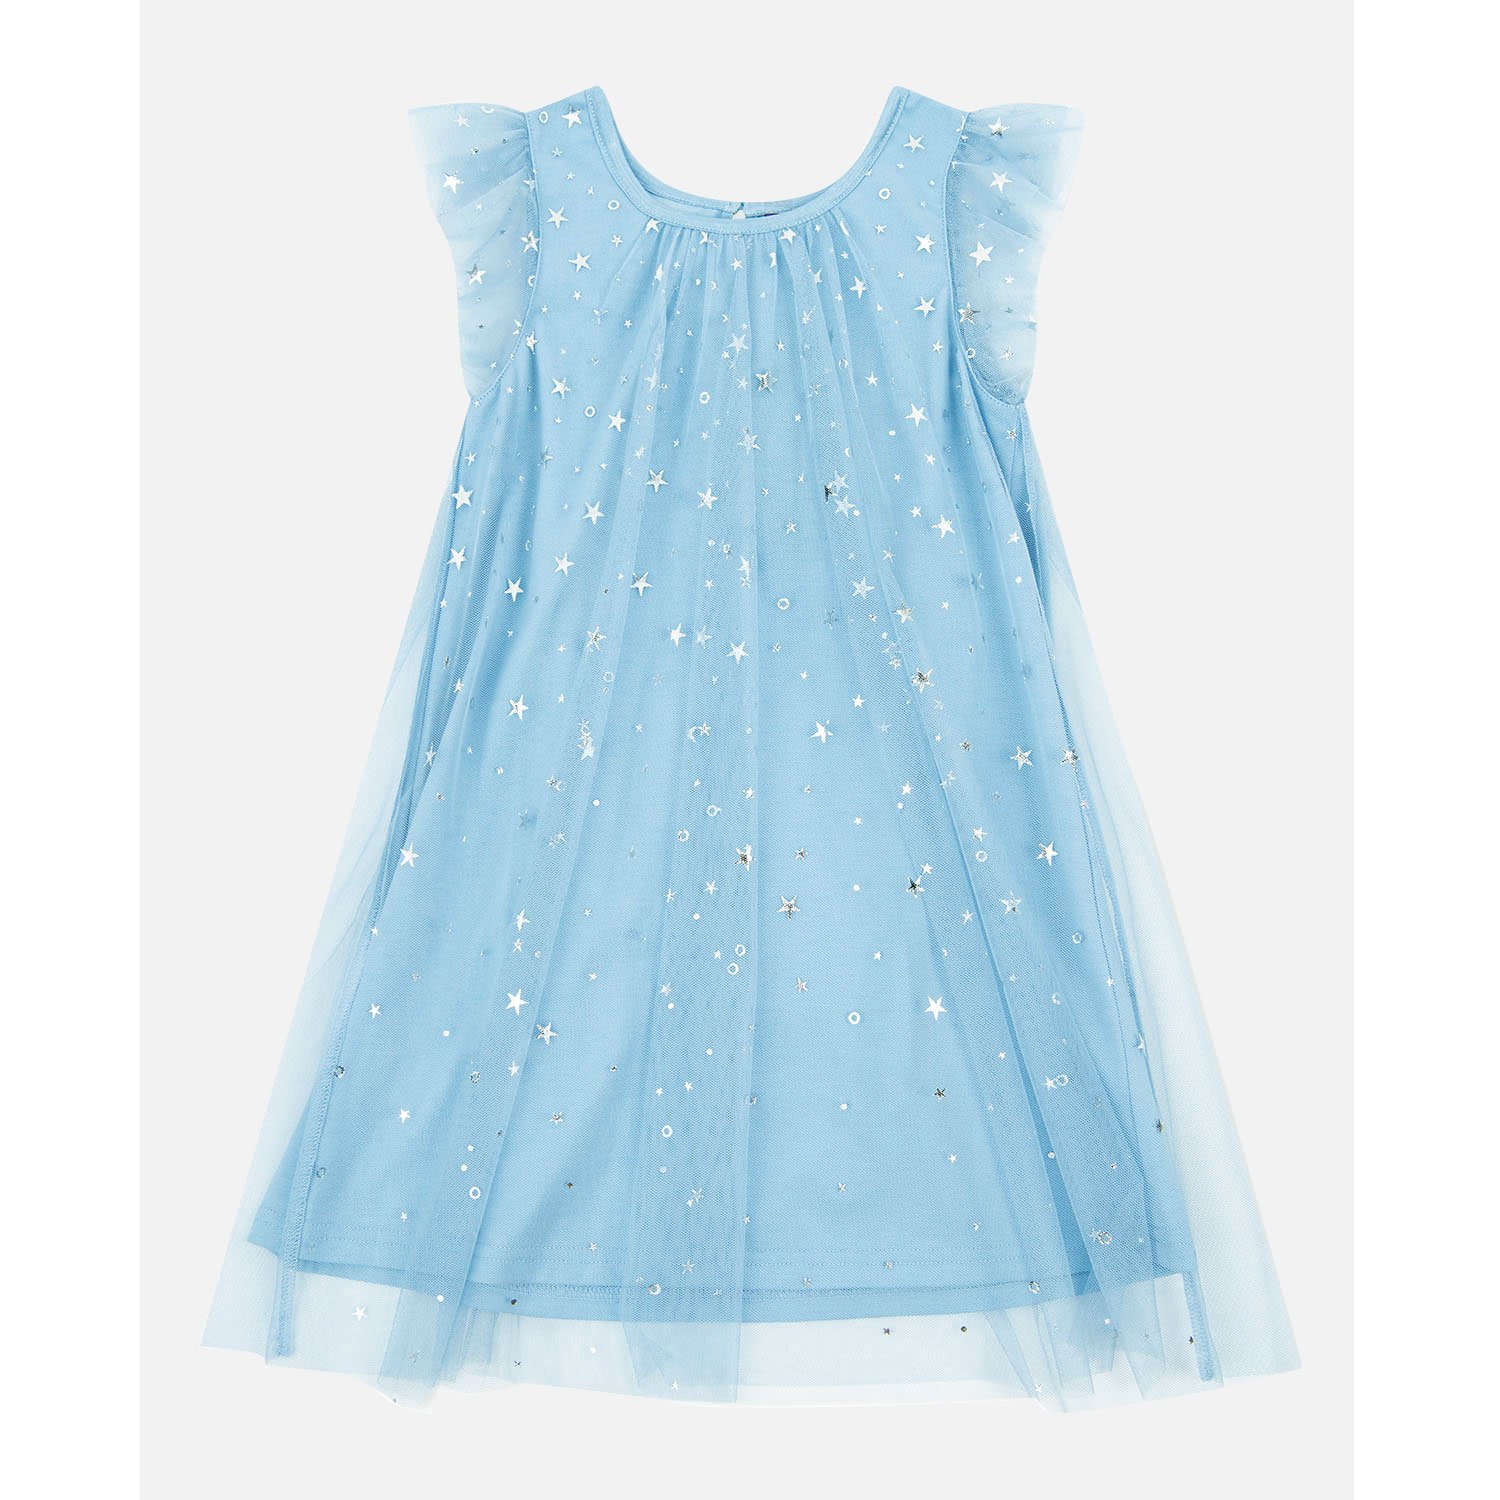 Платье Орсолини детский мир голубое